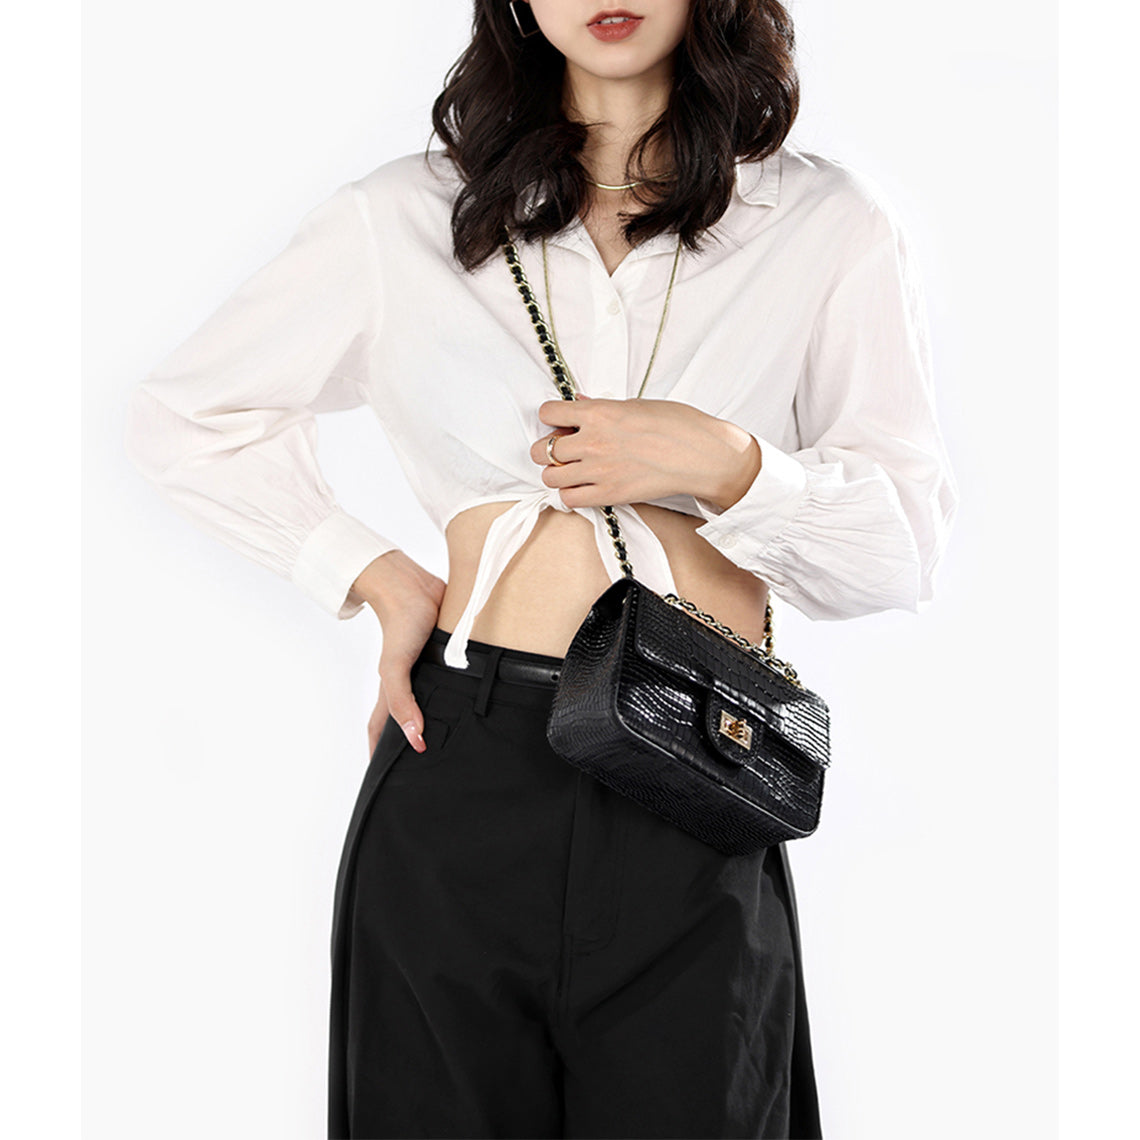 Black Leather Shoulder Bag Evening Bag for Women | DIY Crossbody Bag Kits - POPSEWING™